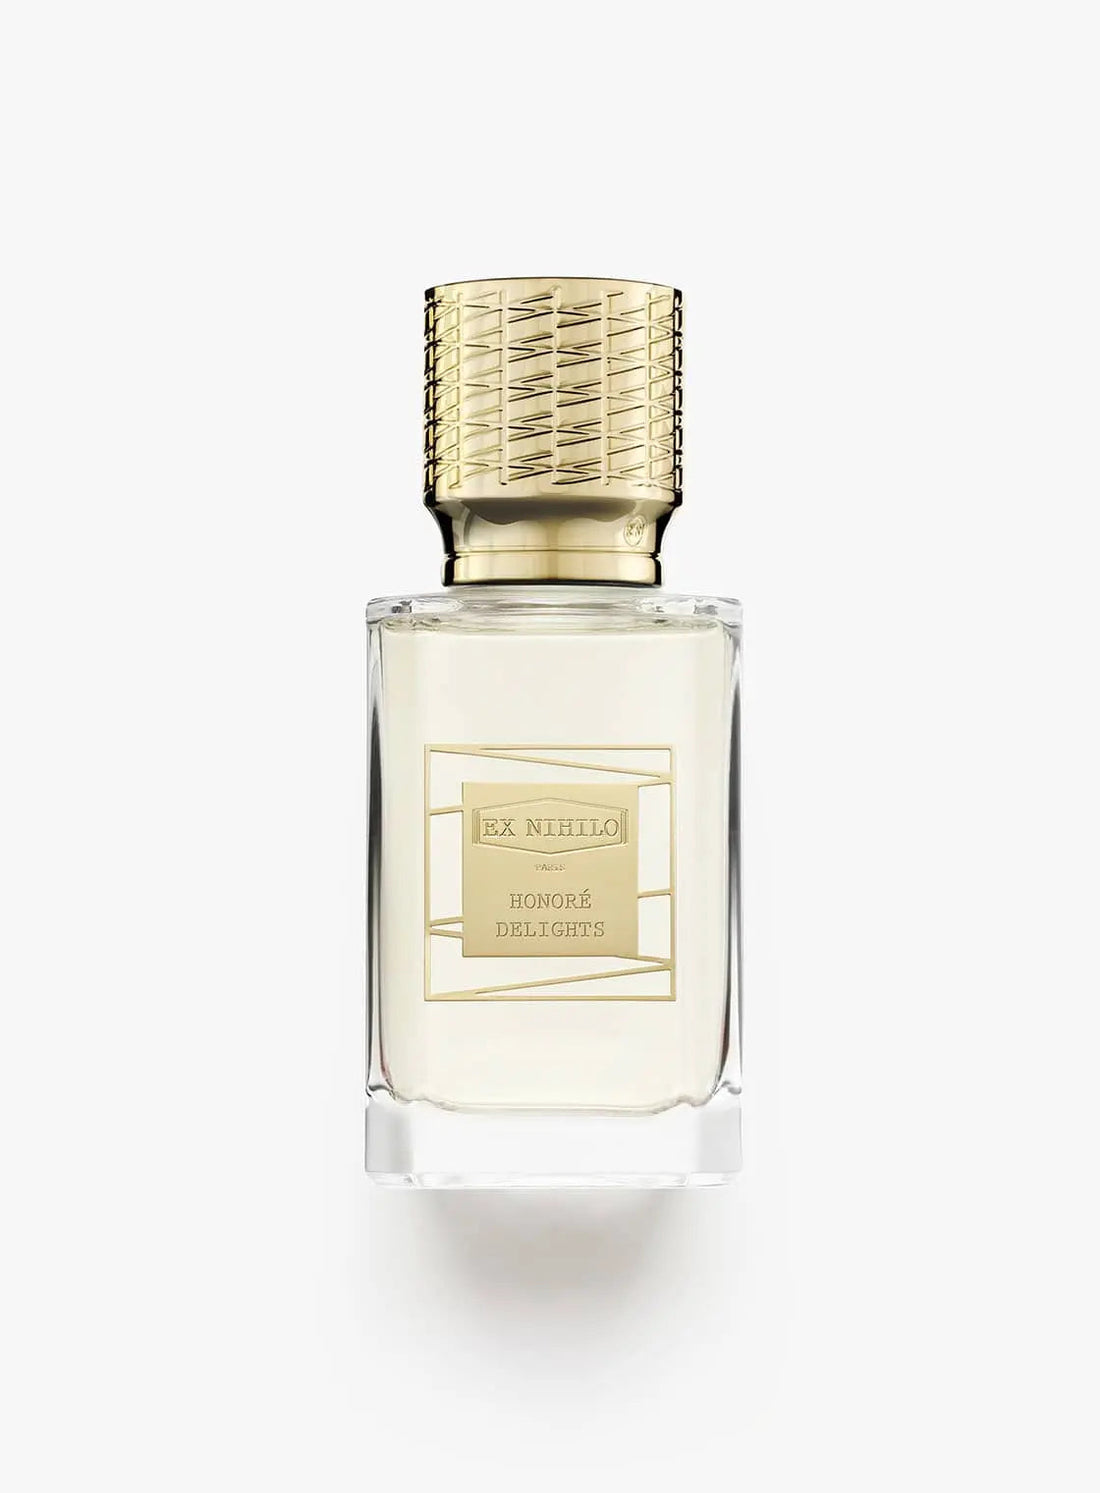 Ex nihilo Honorè Delights Eau de Parfum - 50 ml